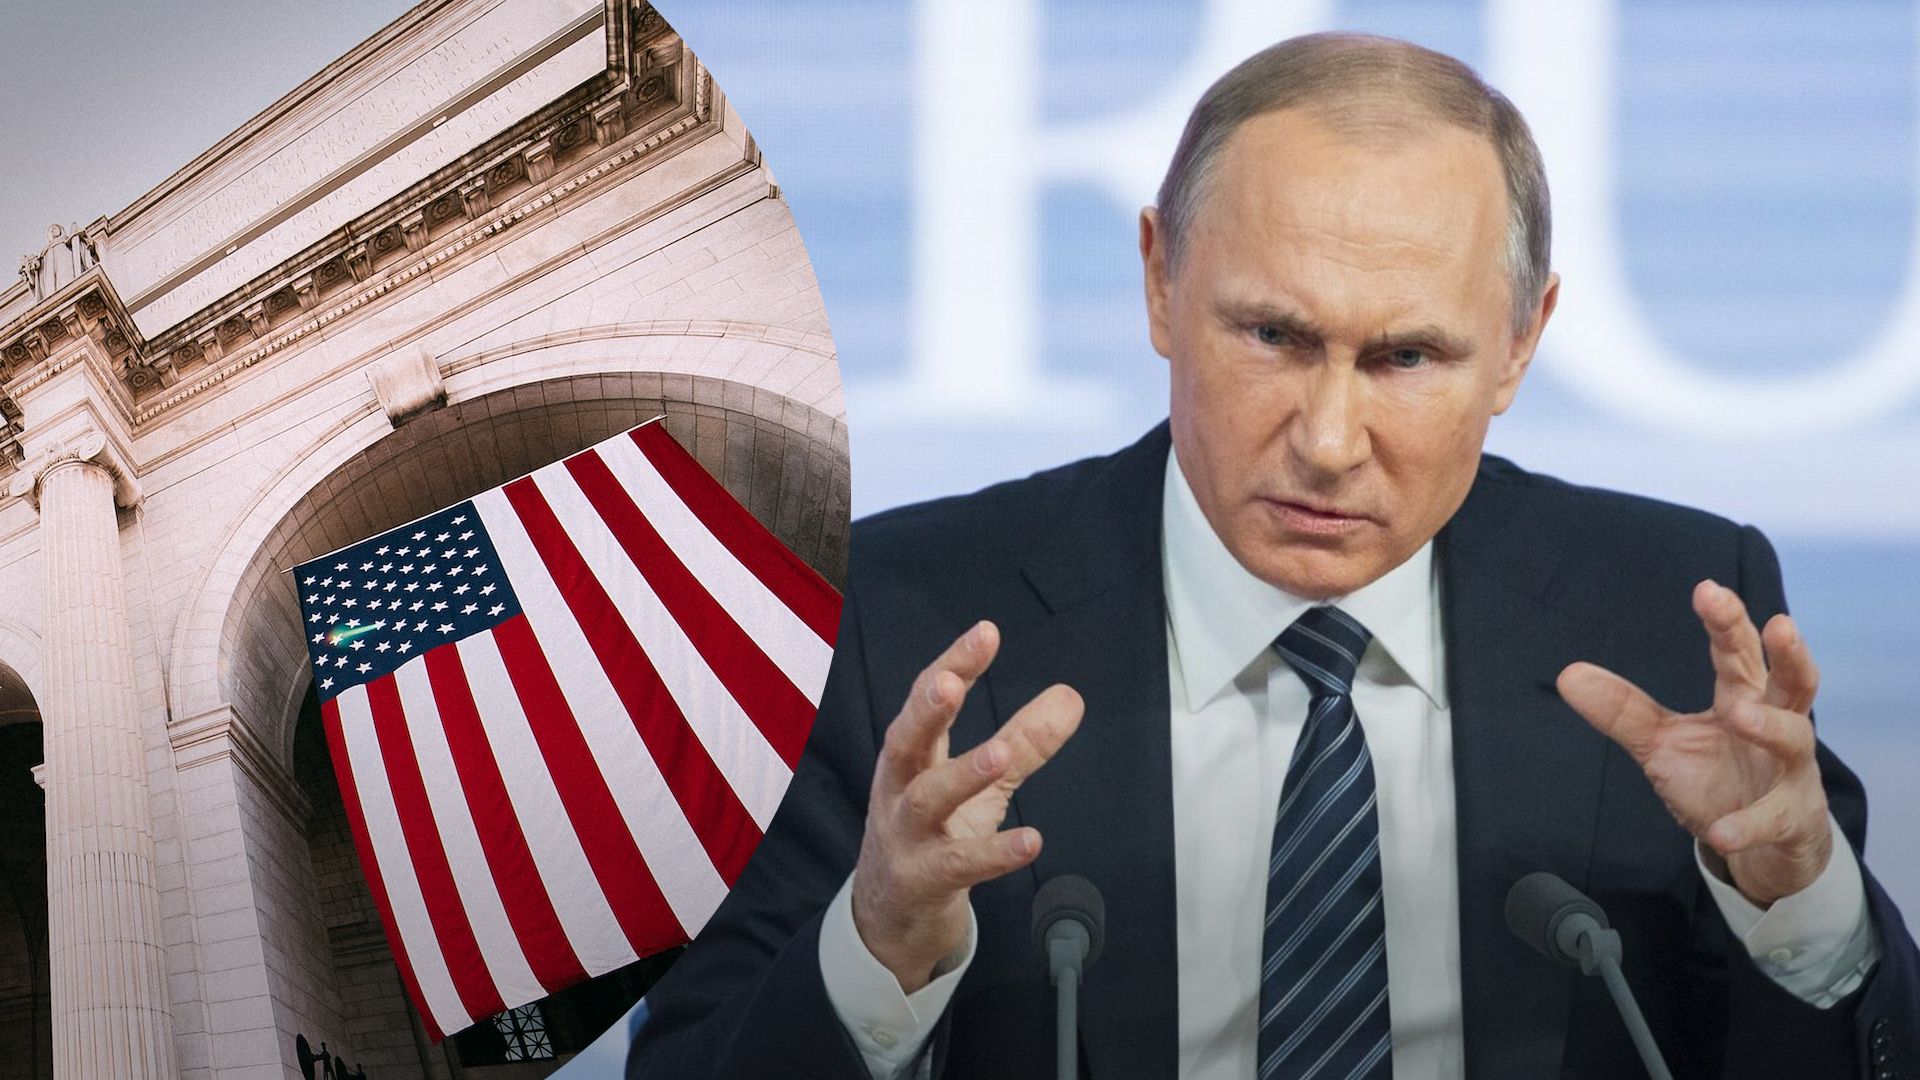 Росія передає ядерну зброю Білорусі - як на це відреагували у США, якими будуть дії